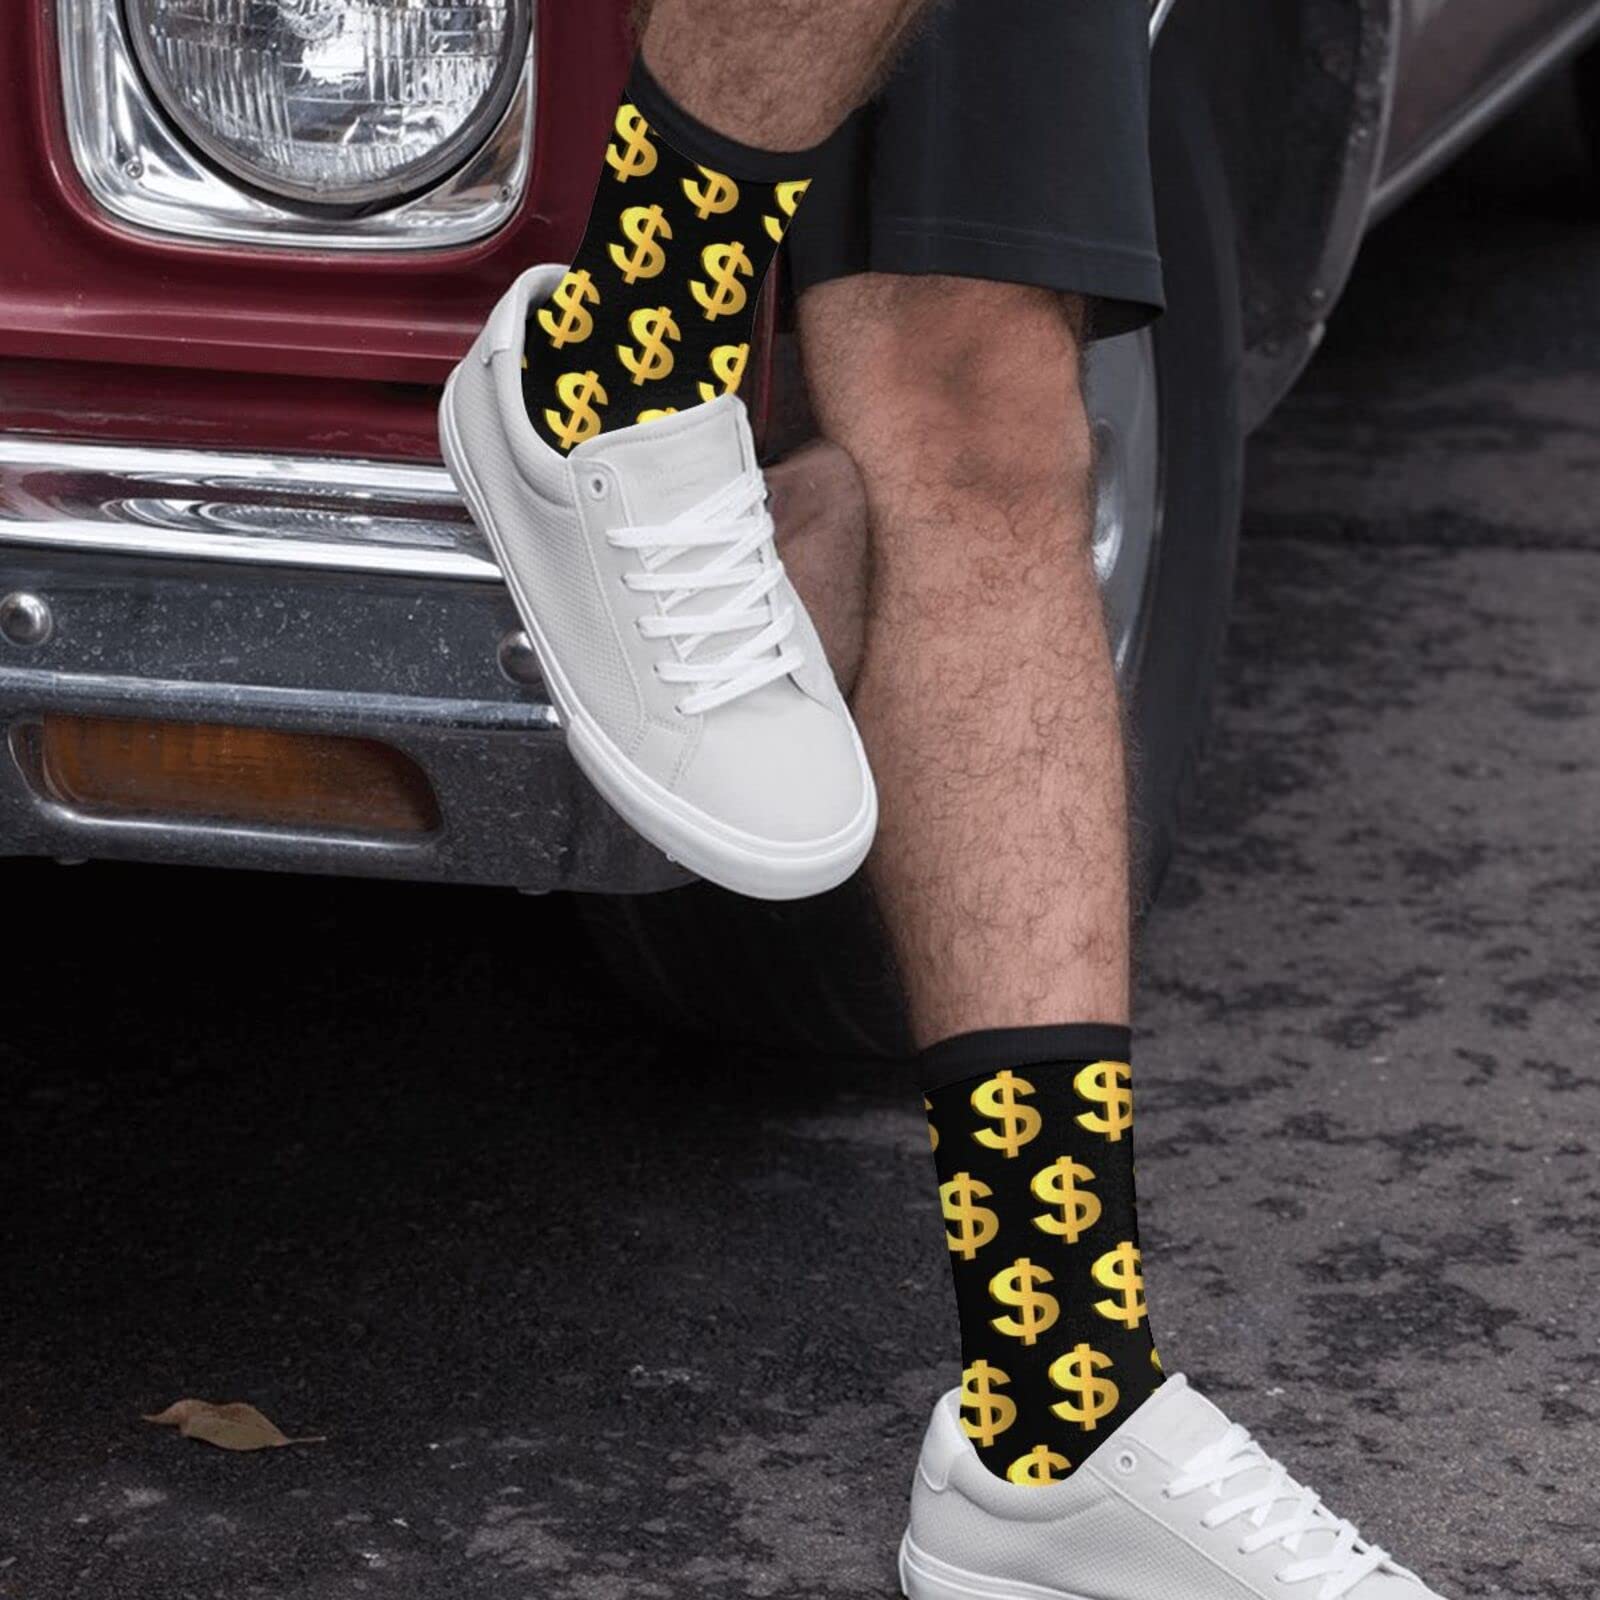 Cool Socks For Men Women Fun Novelty Crew Socks